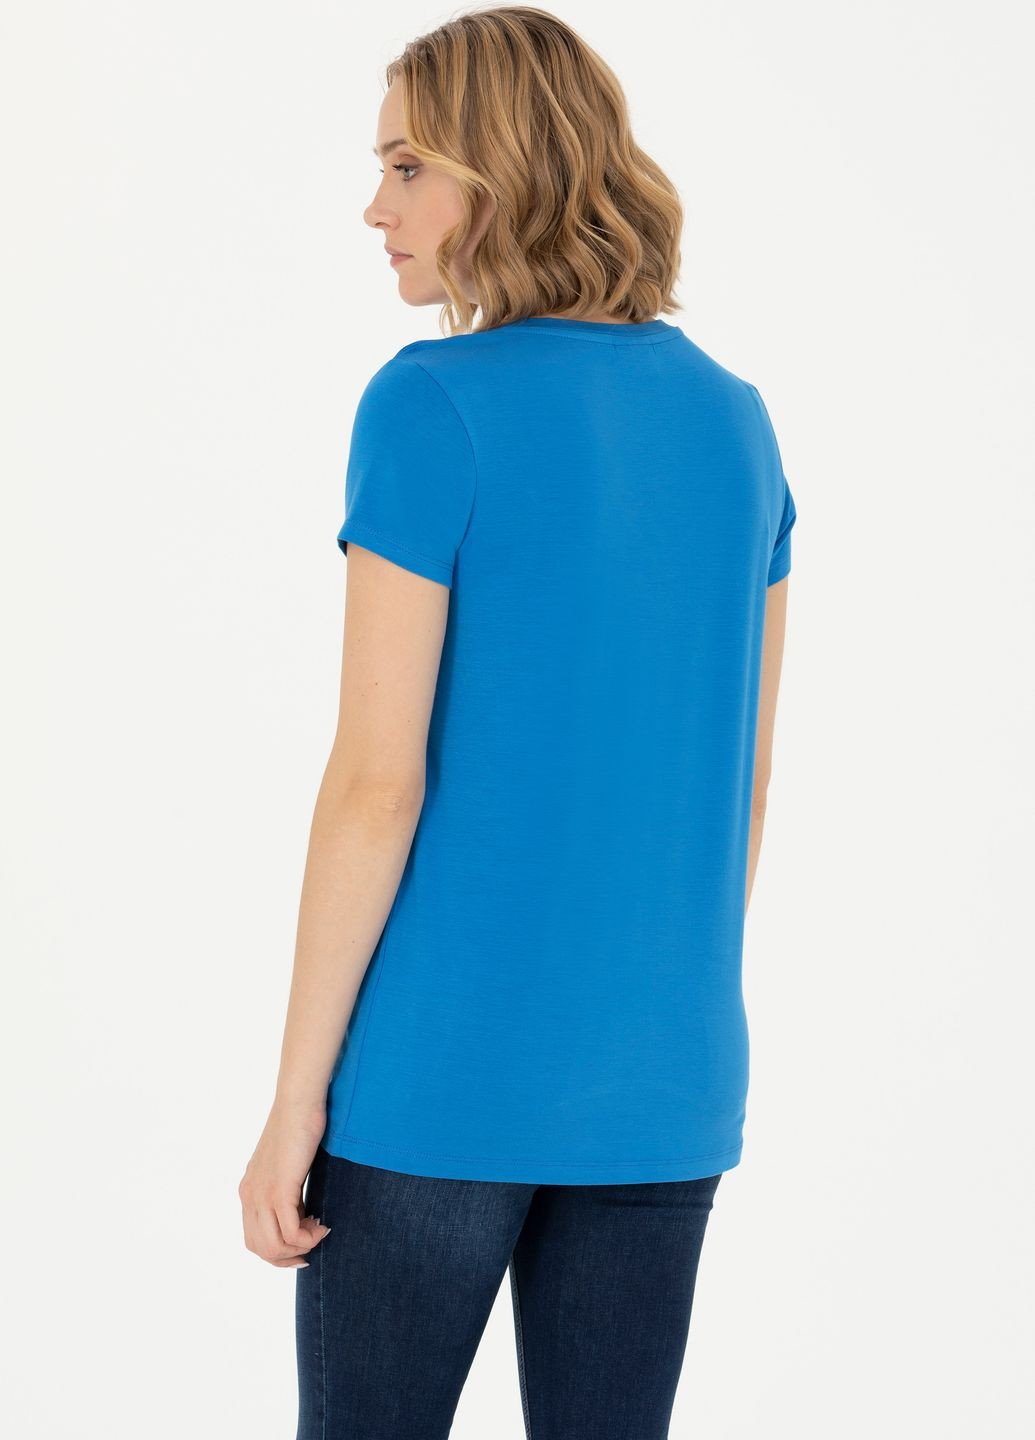 Синяя женская футболка-футболка u.s.polo assn женская U.S. Polo Assn.